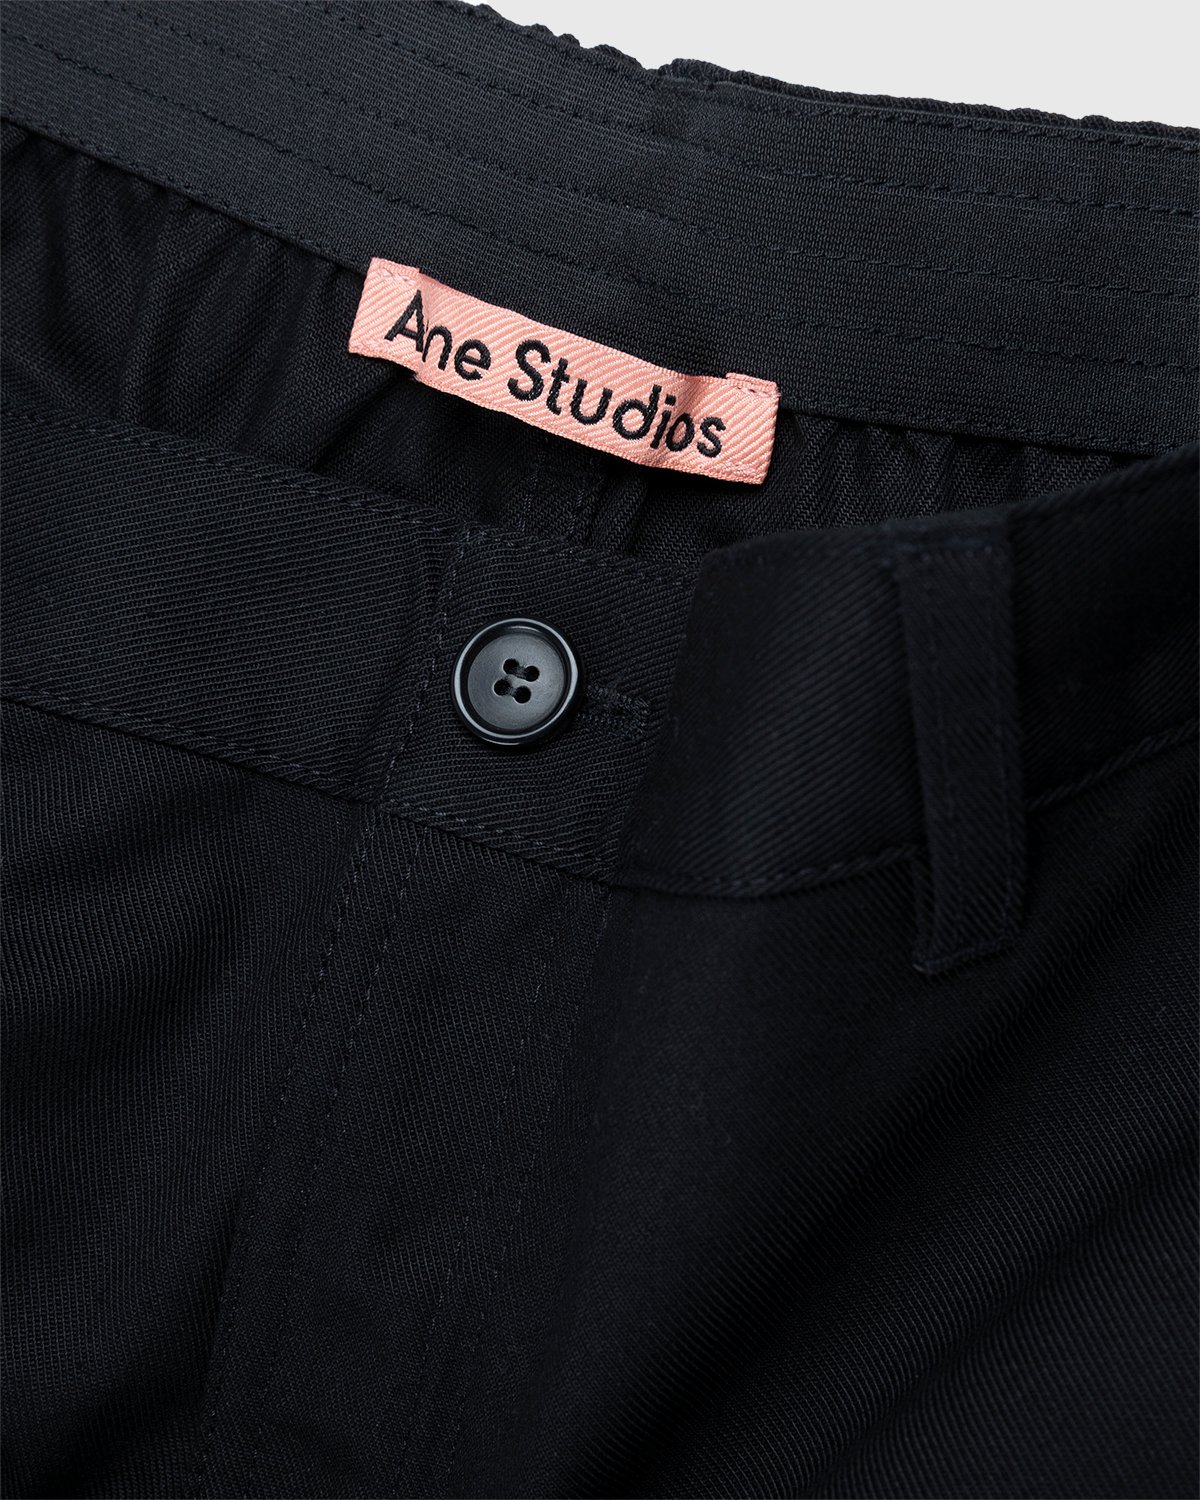 Acne Studios - Ringa Cotton Mix Twill Shorts Black - Clothing - Black - Image 5